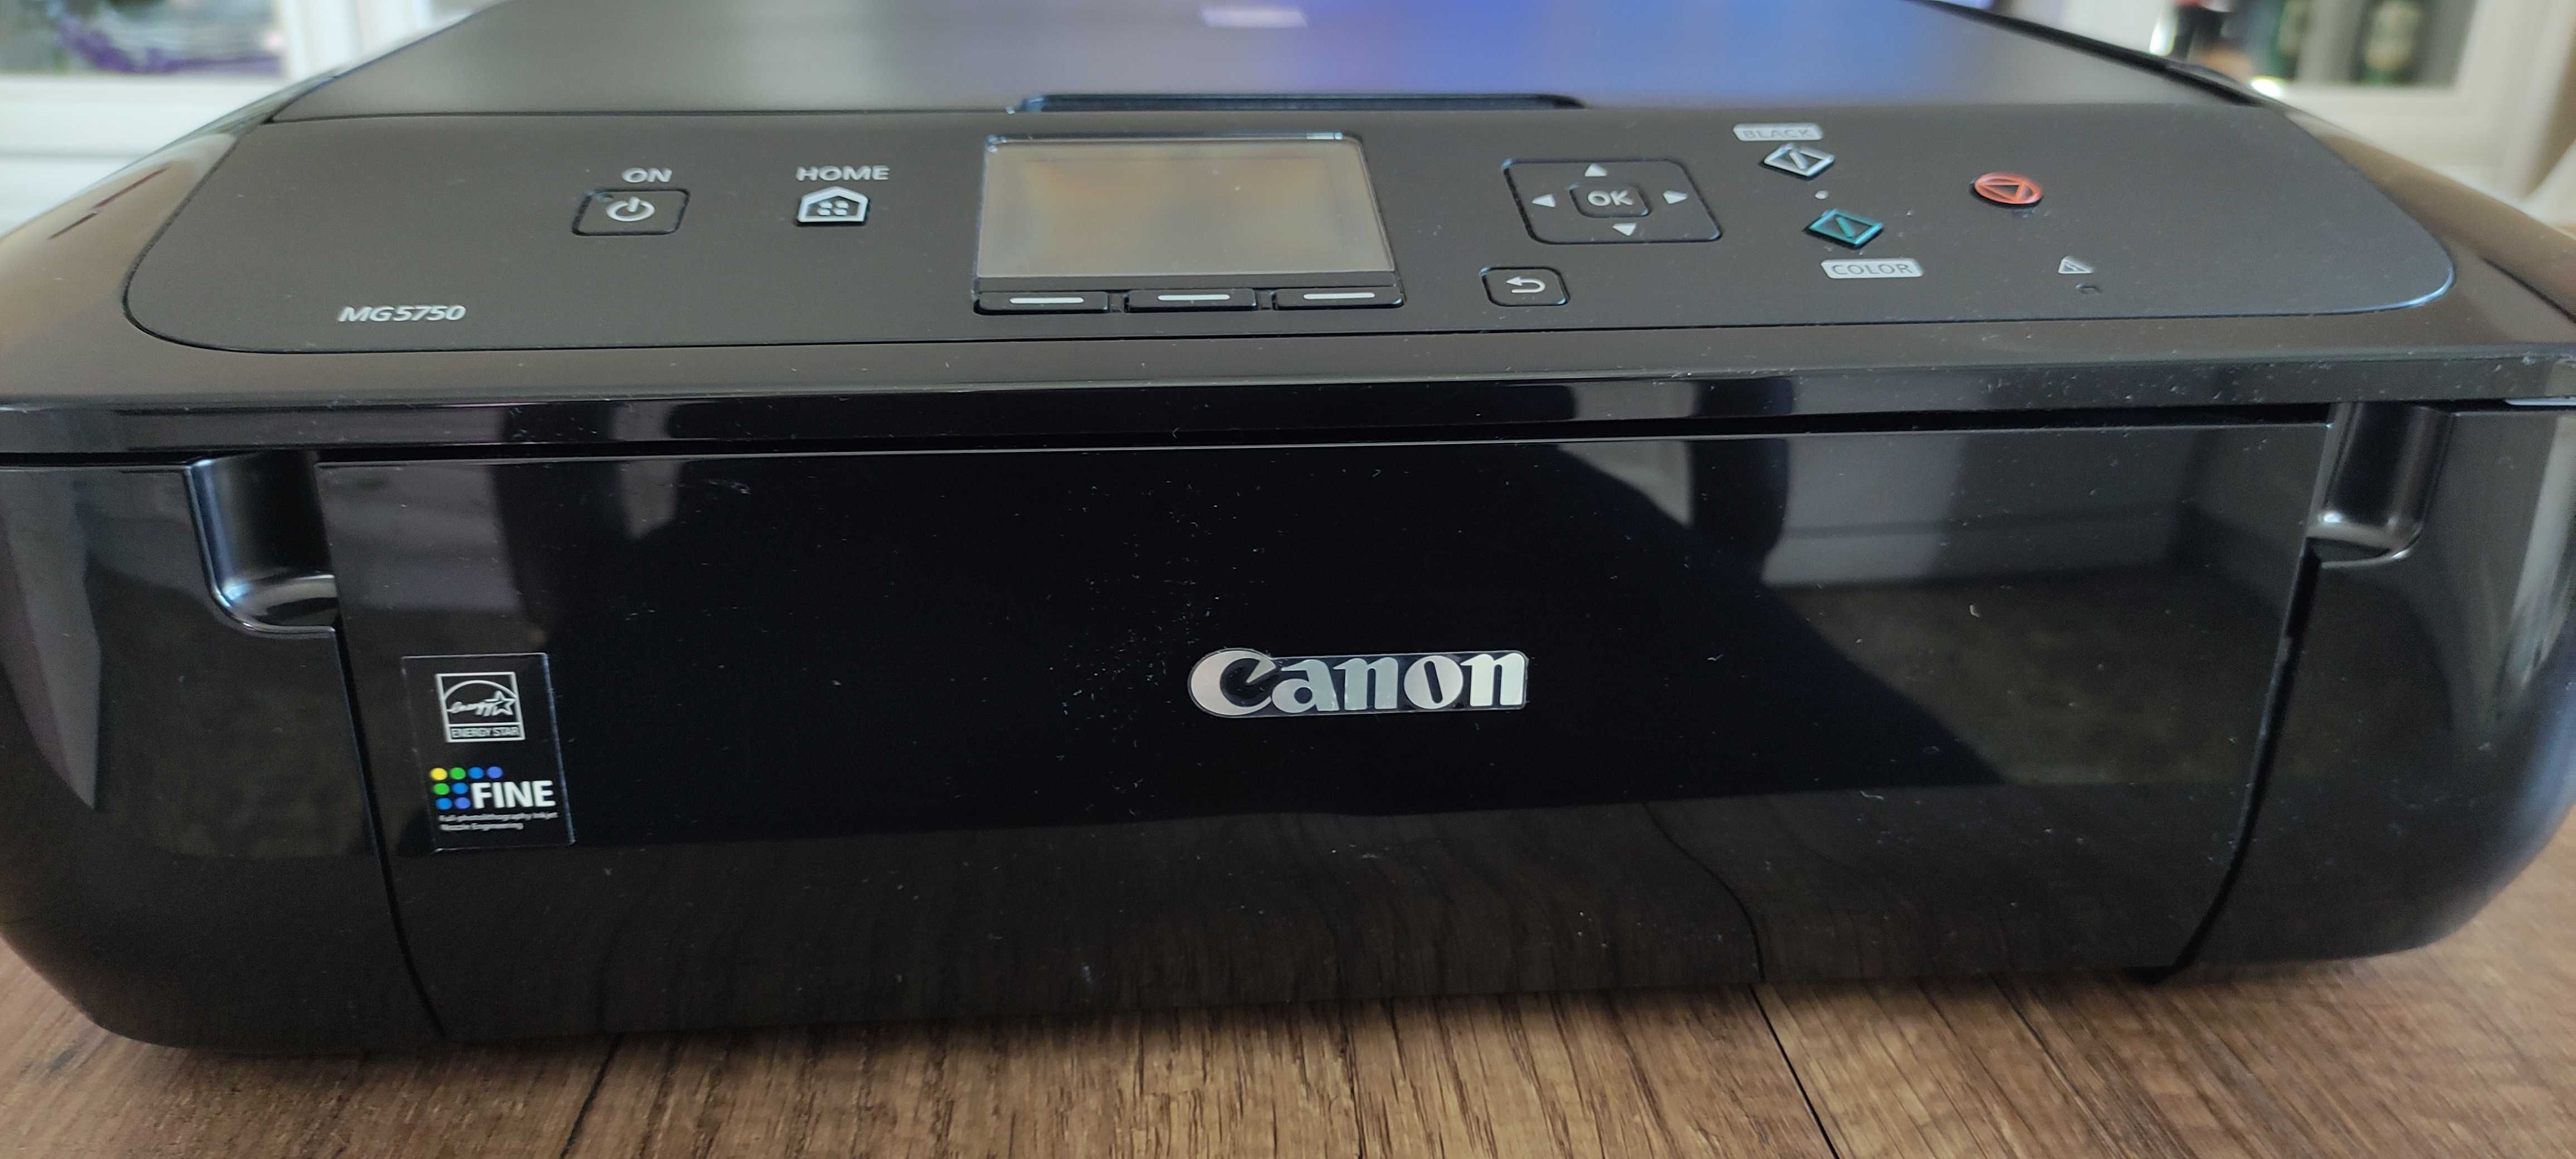 Принтер Canon MG5750-pixma